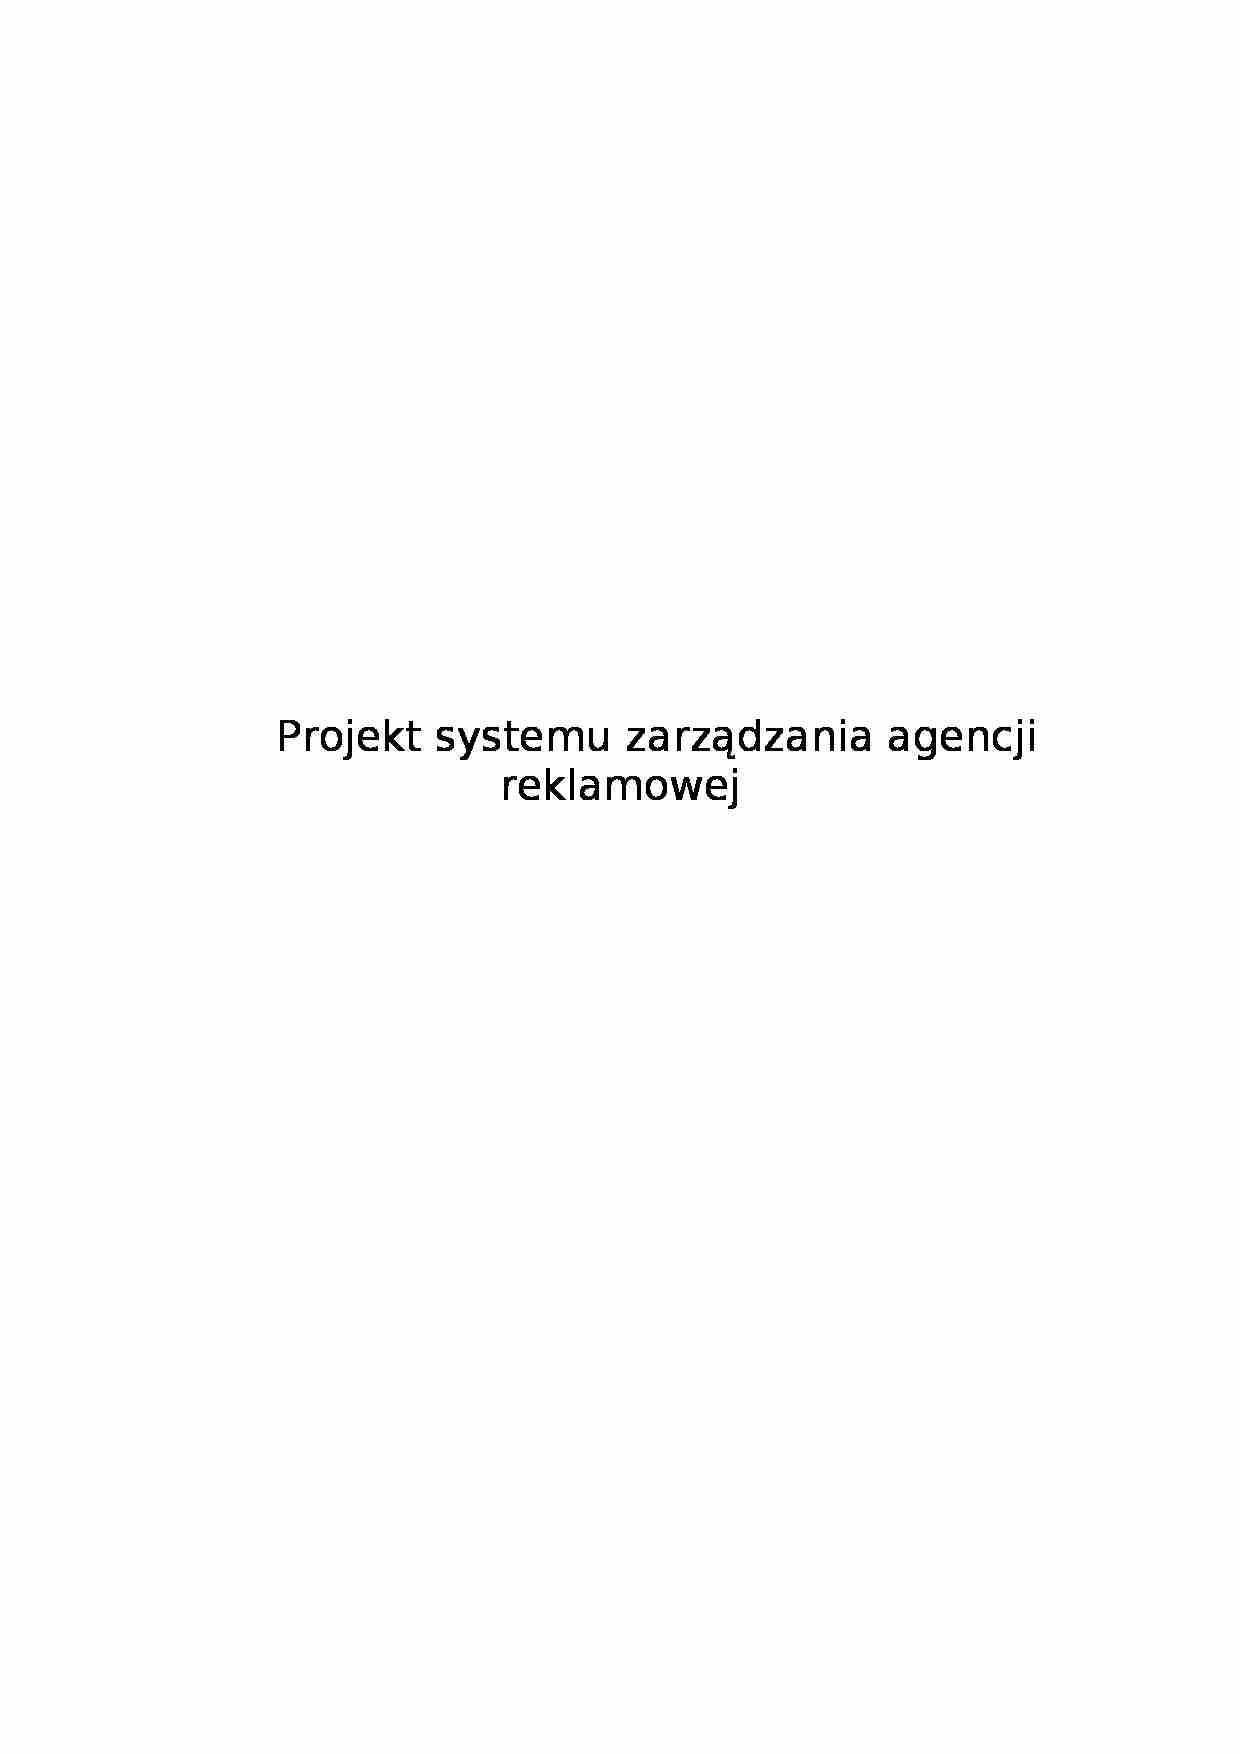 Projekt systemu zarządzania agencji reklamowej - strona 1